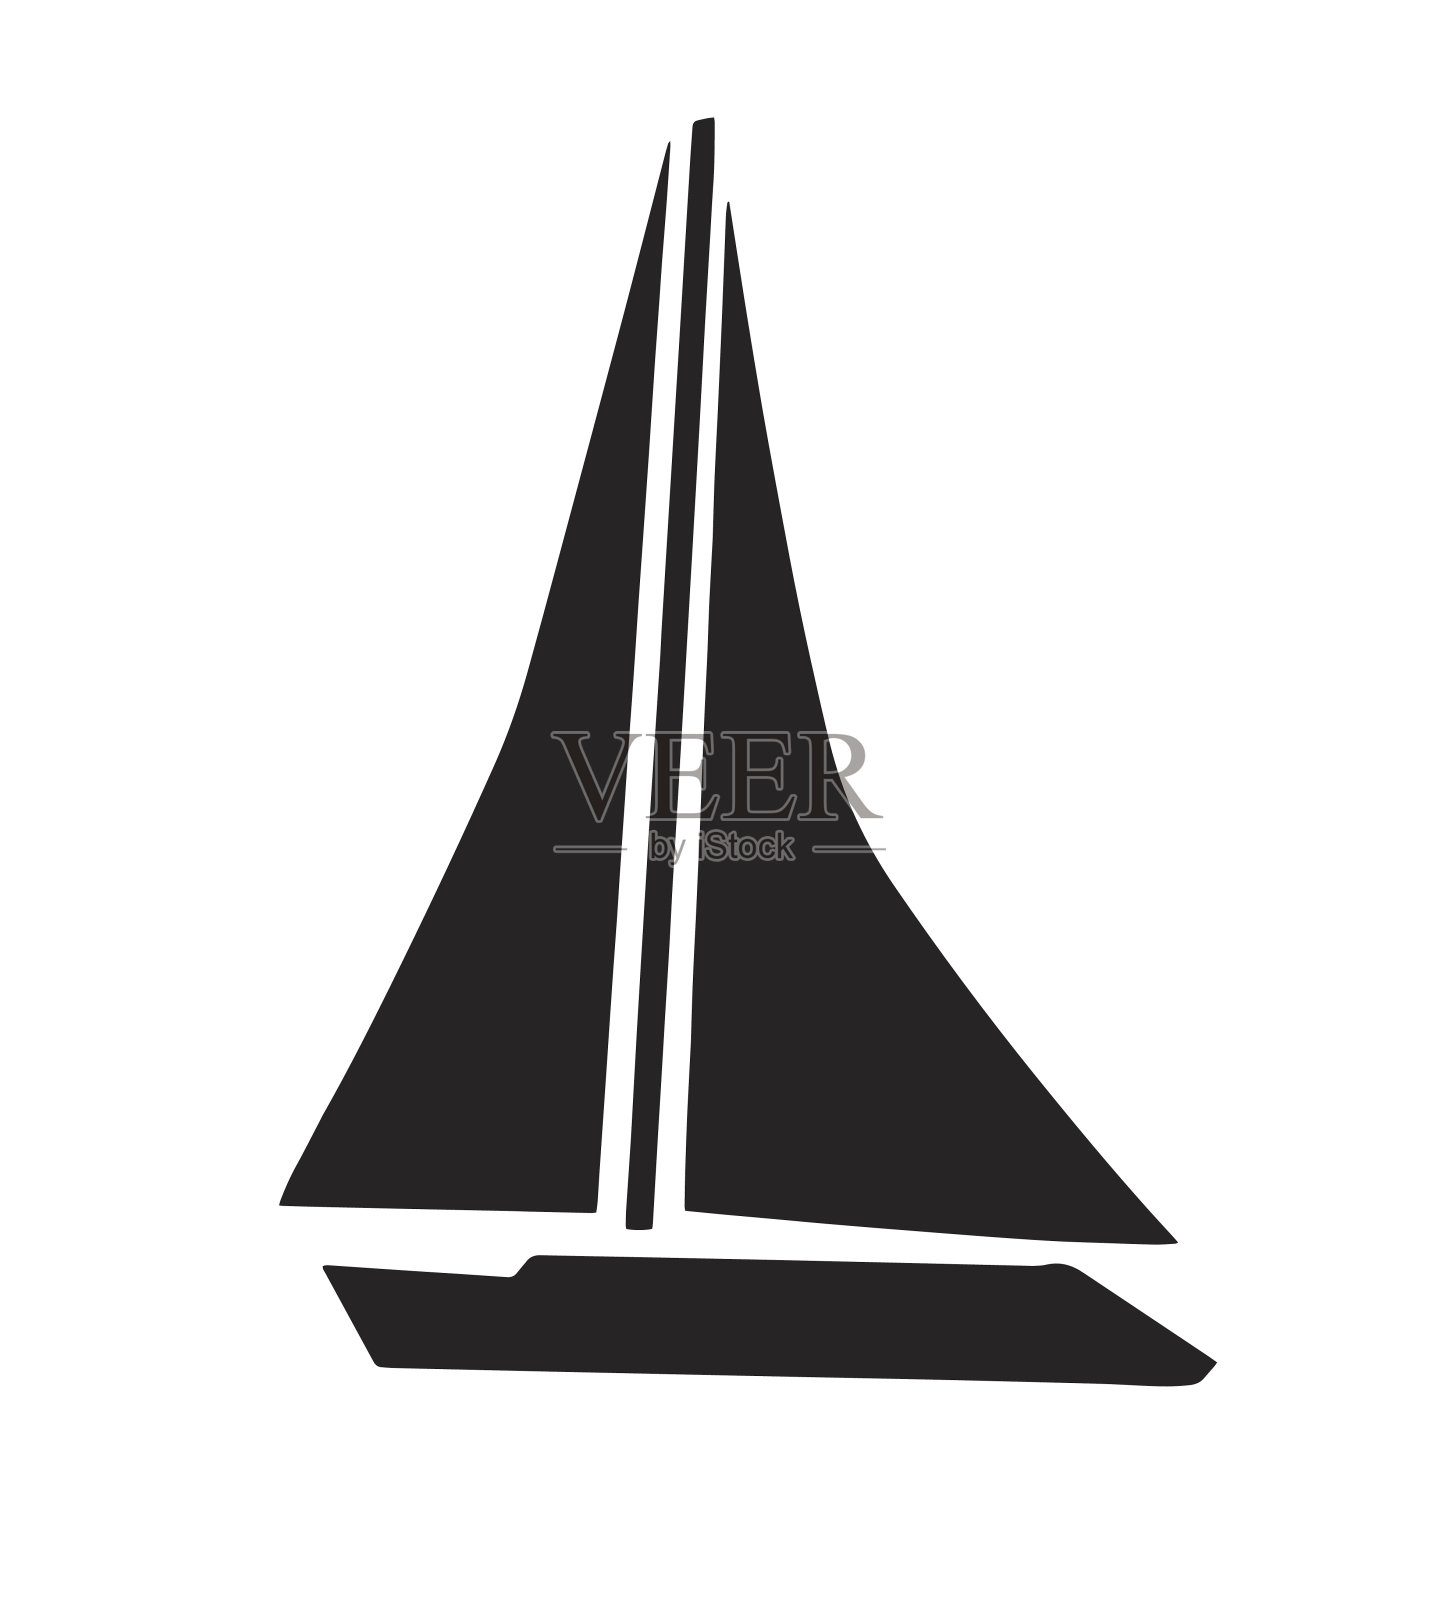 黑色帆船轮廓矢量插画图片素材